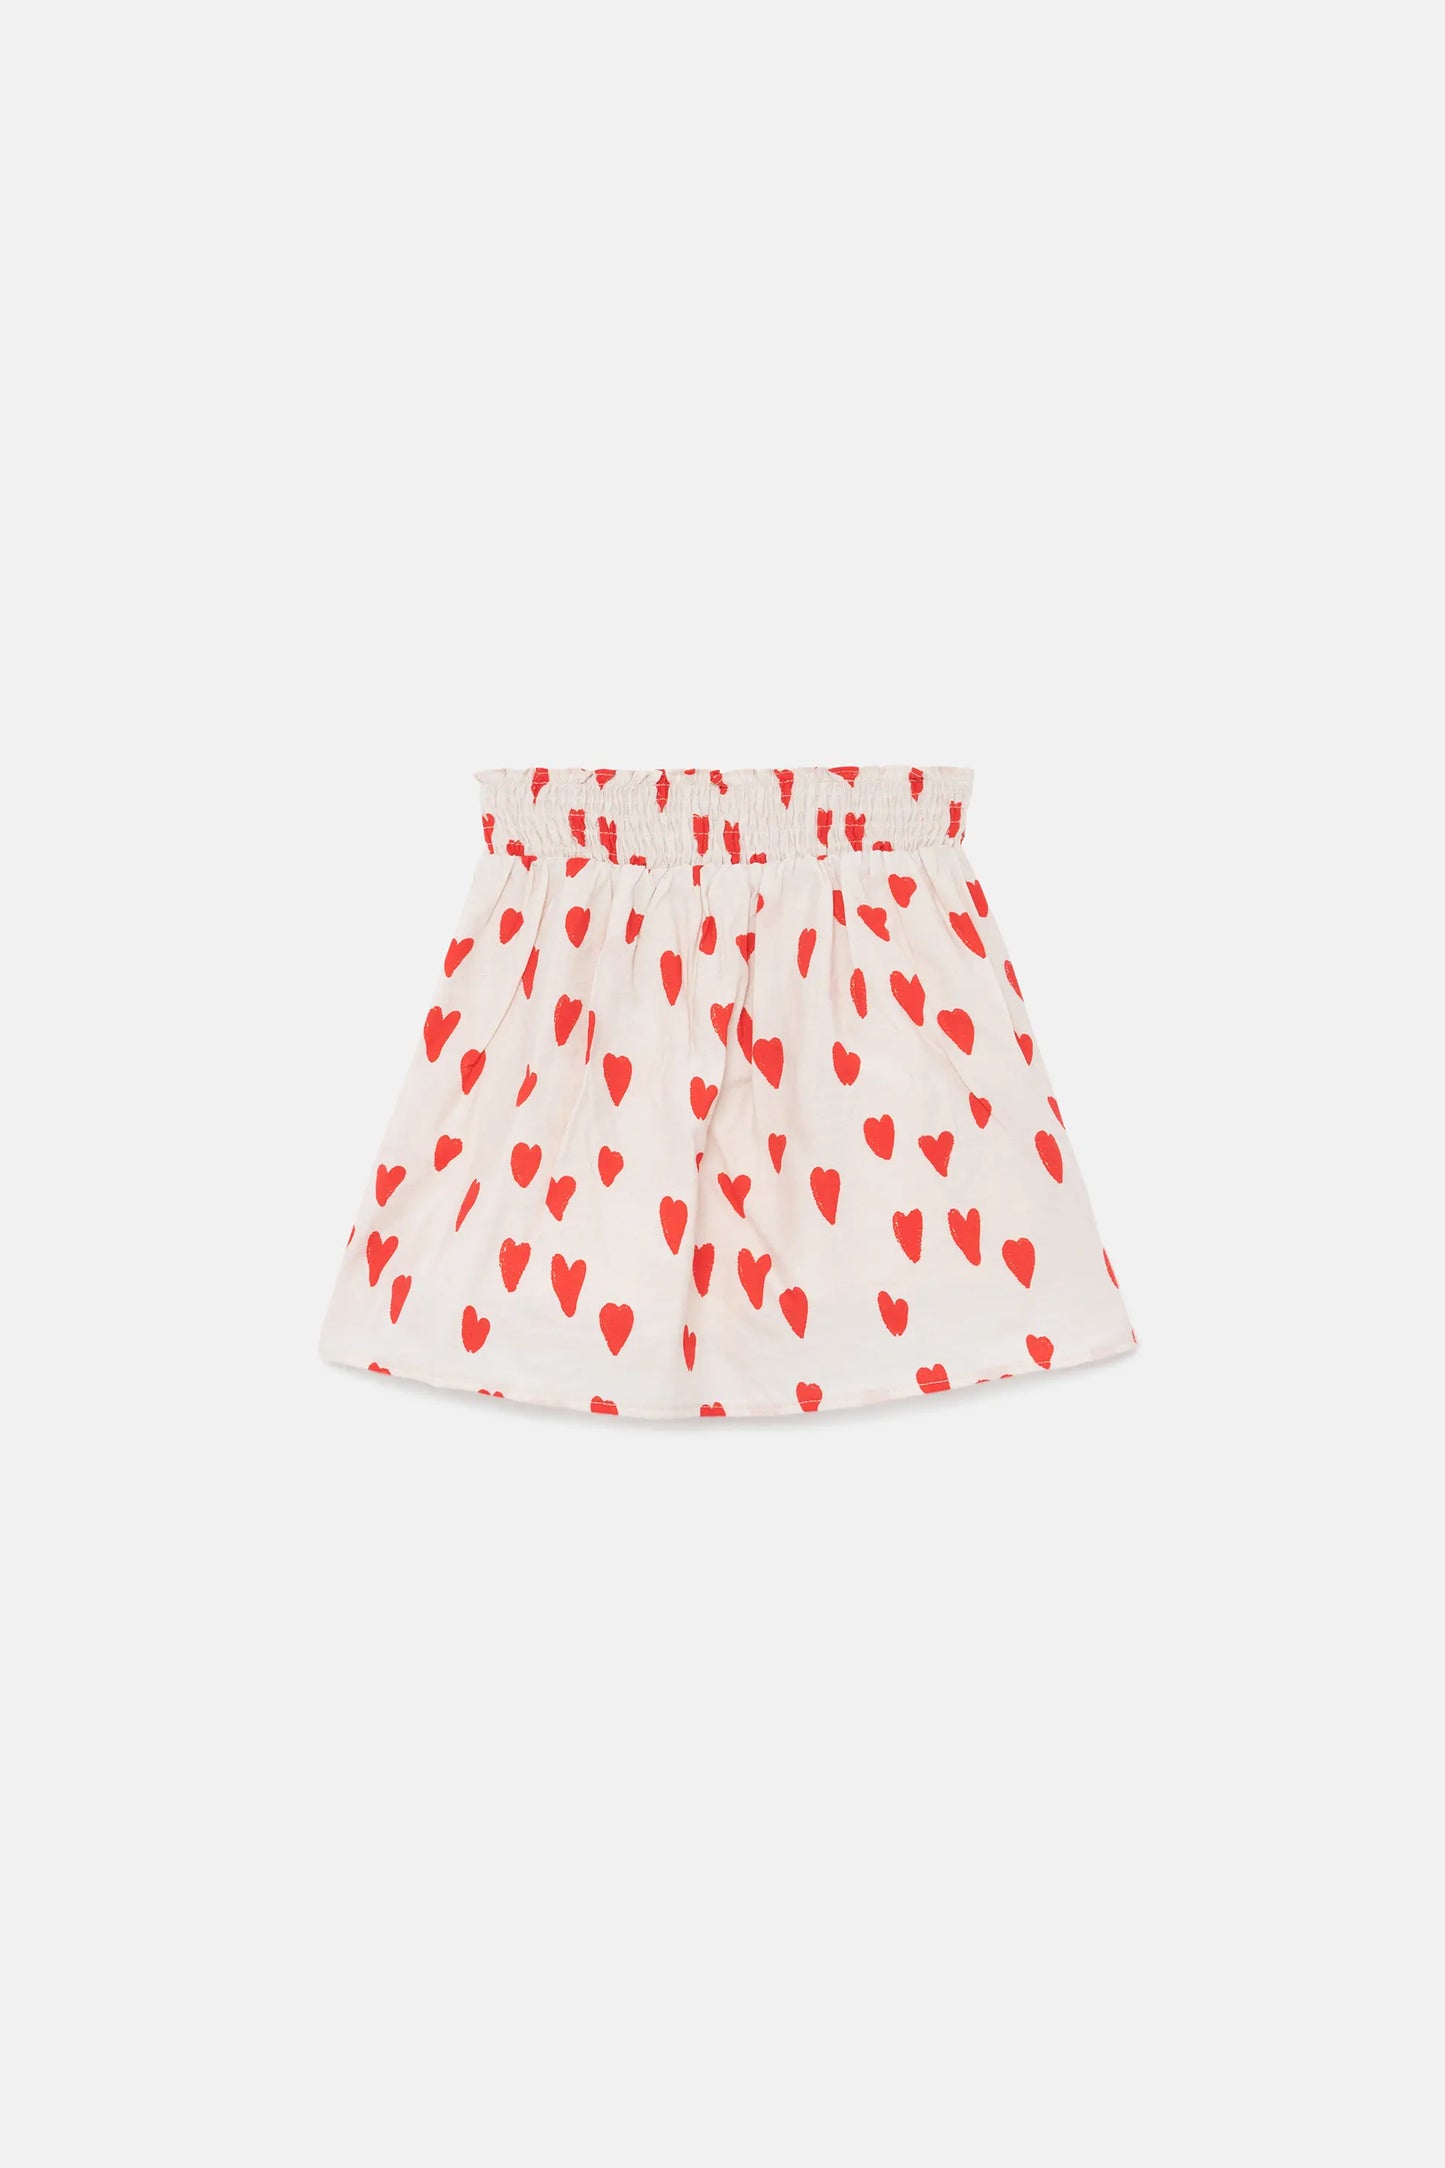 Girl's short skirt with heart print